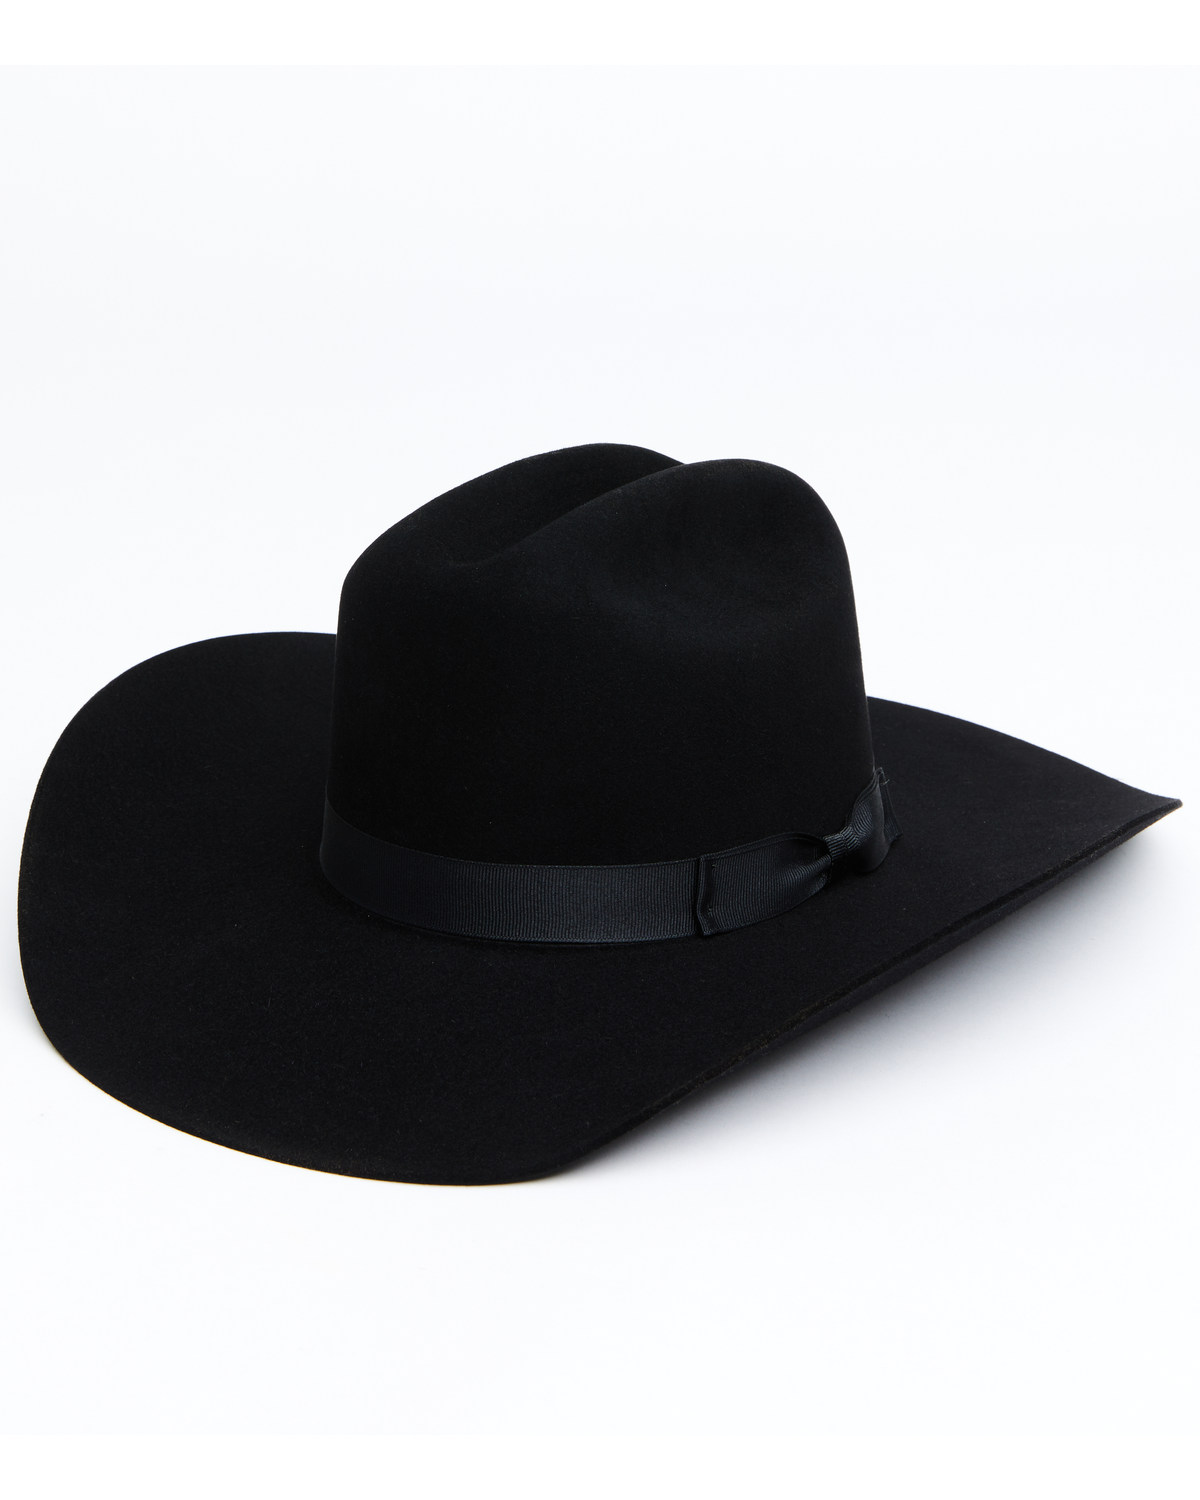 Serratelli 6X Felt Cowboy Hat